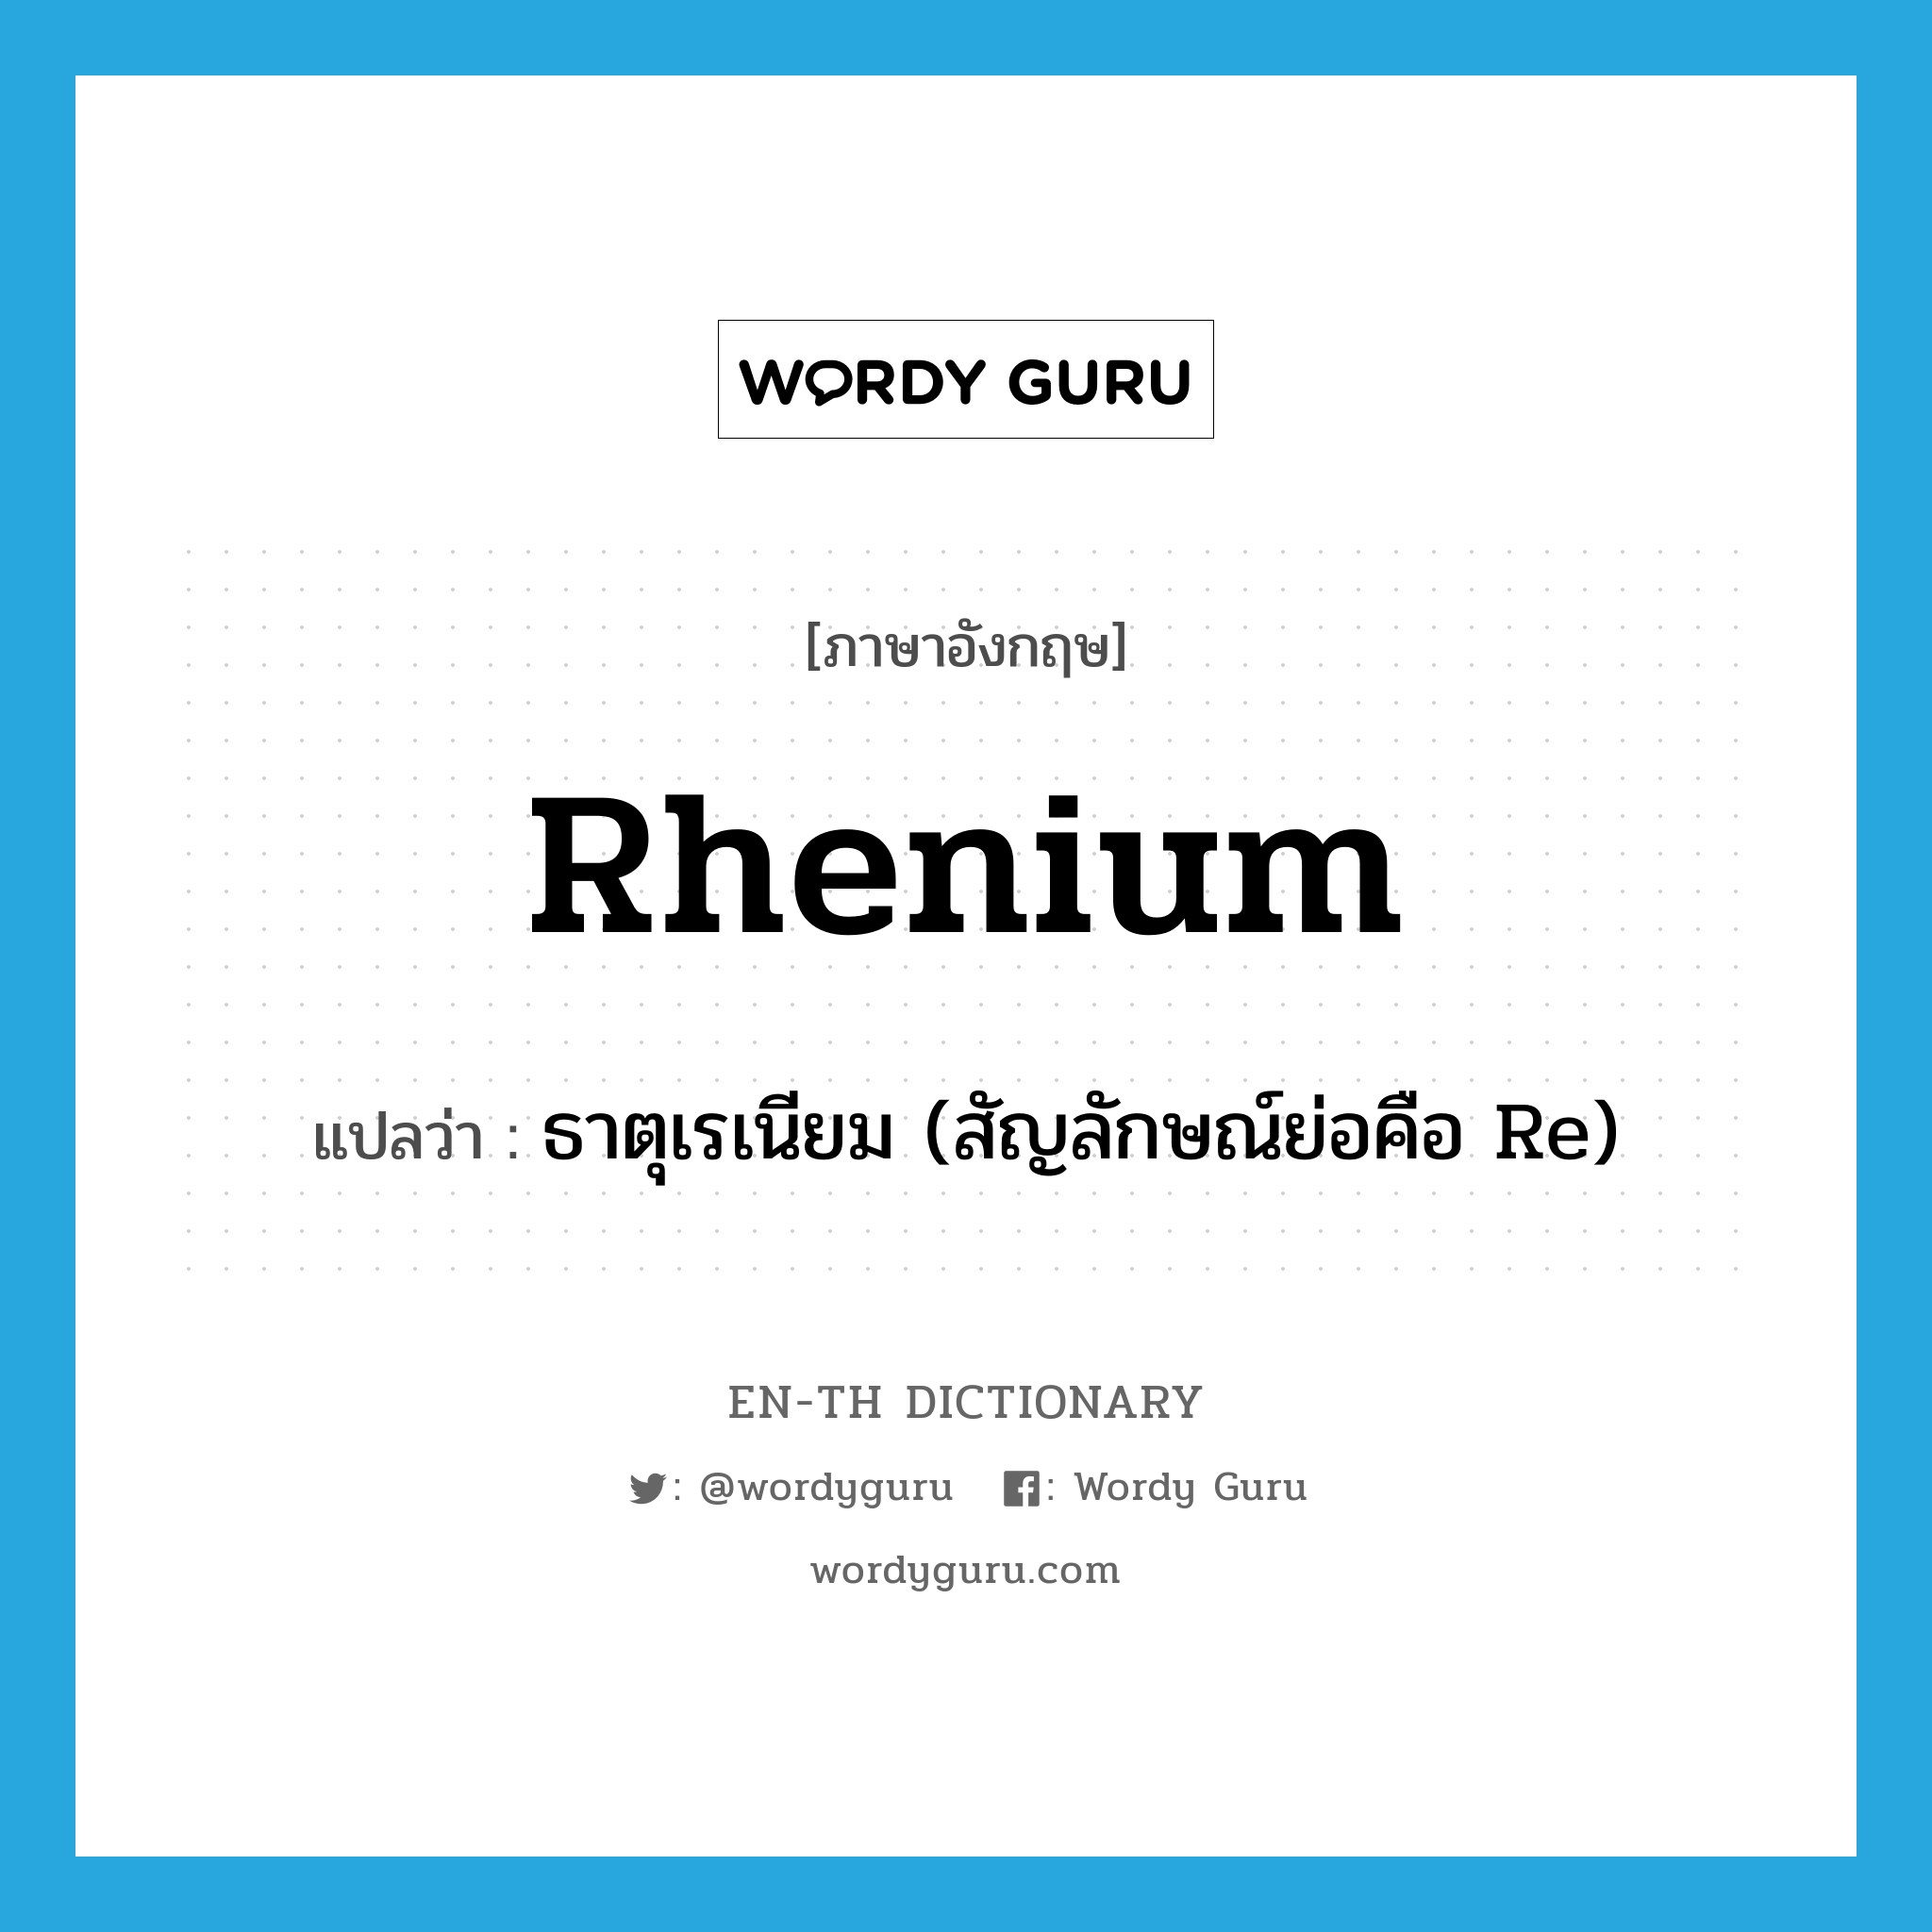 rhenium แปลว่า?, คำศัพท์ภาษาอังกฤษ rhenium แปลว่า ธาตุเรเนียม (สัญลักษณ์ย่อคือ Re) ประเภท N หมวด N